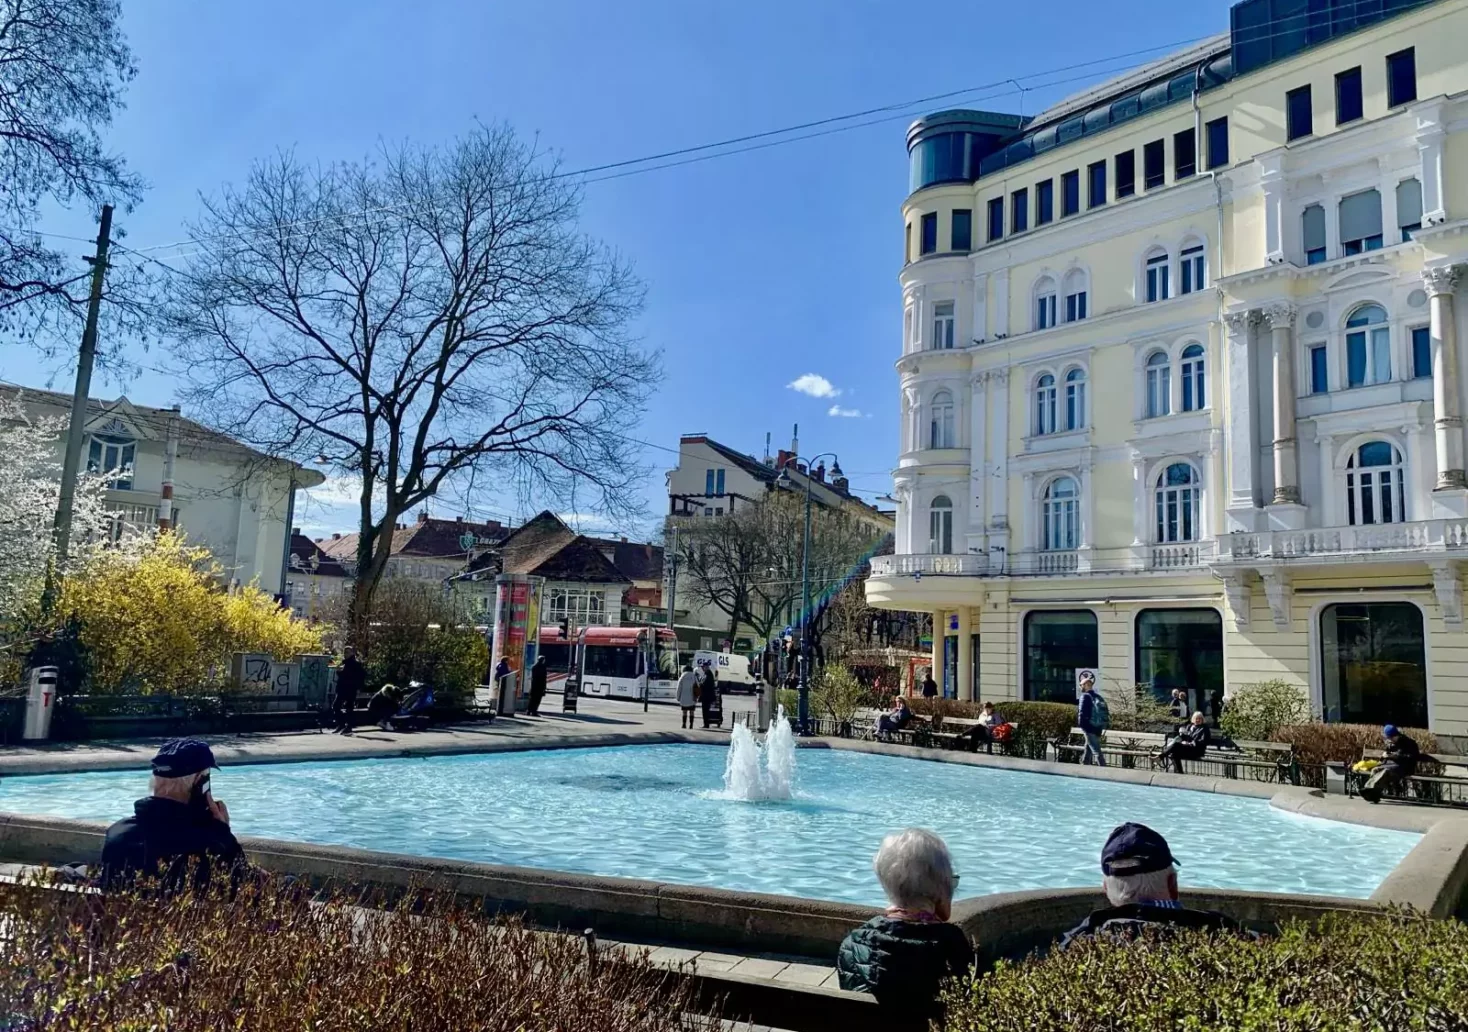 Bild auf 5min.at zeigt die Grazer Innenstadt. Zu sehen ist der Brunnen beim Eisernen Tor.